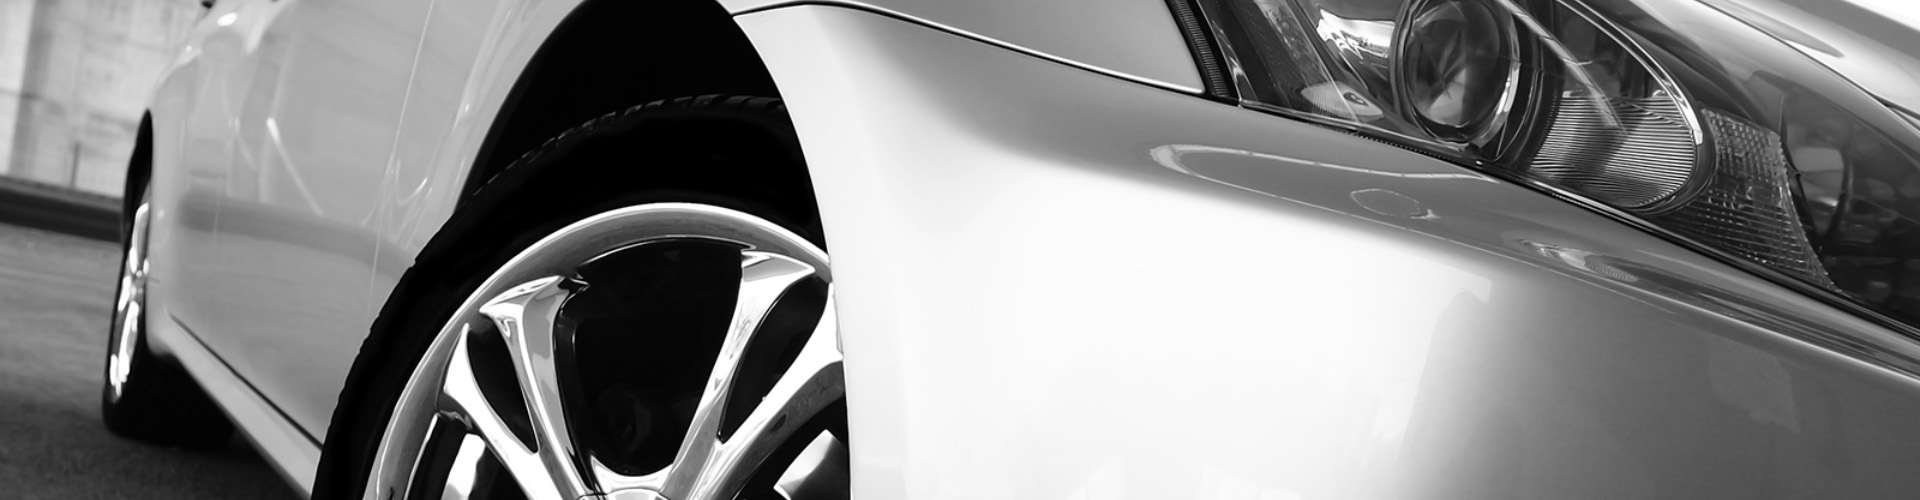 Closeup of grey sedan